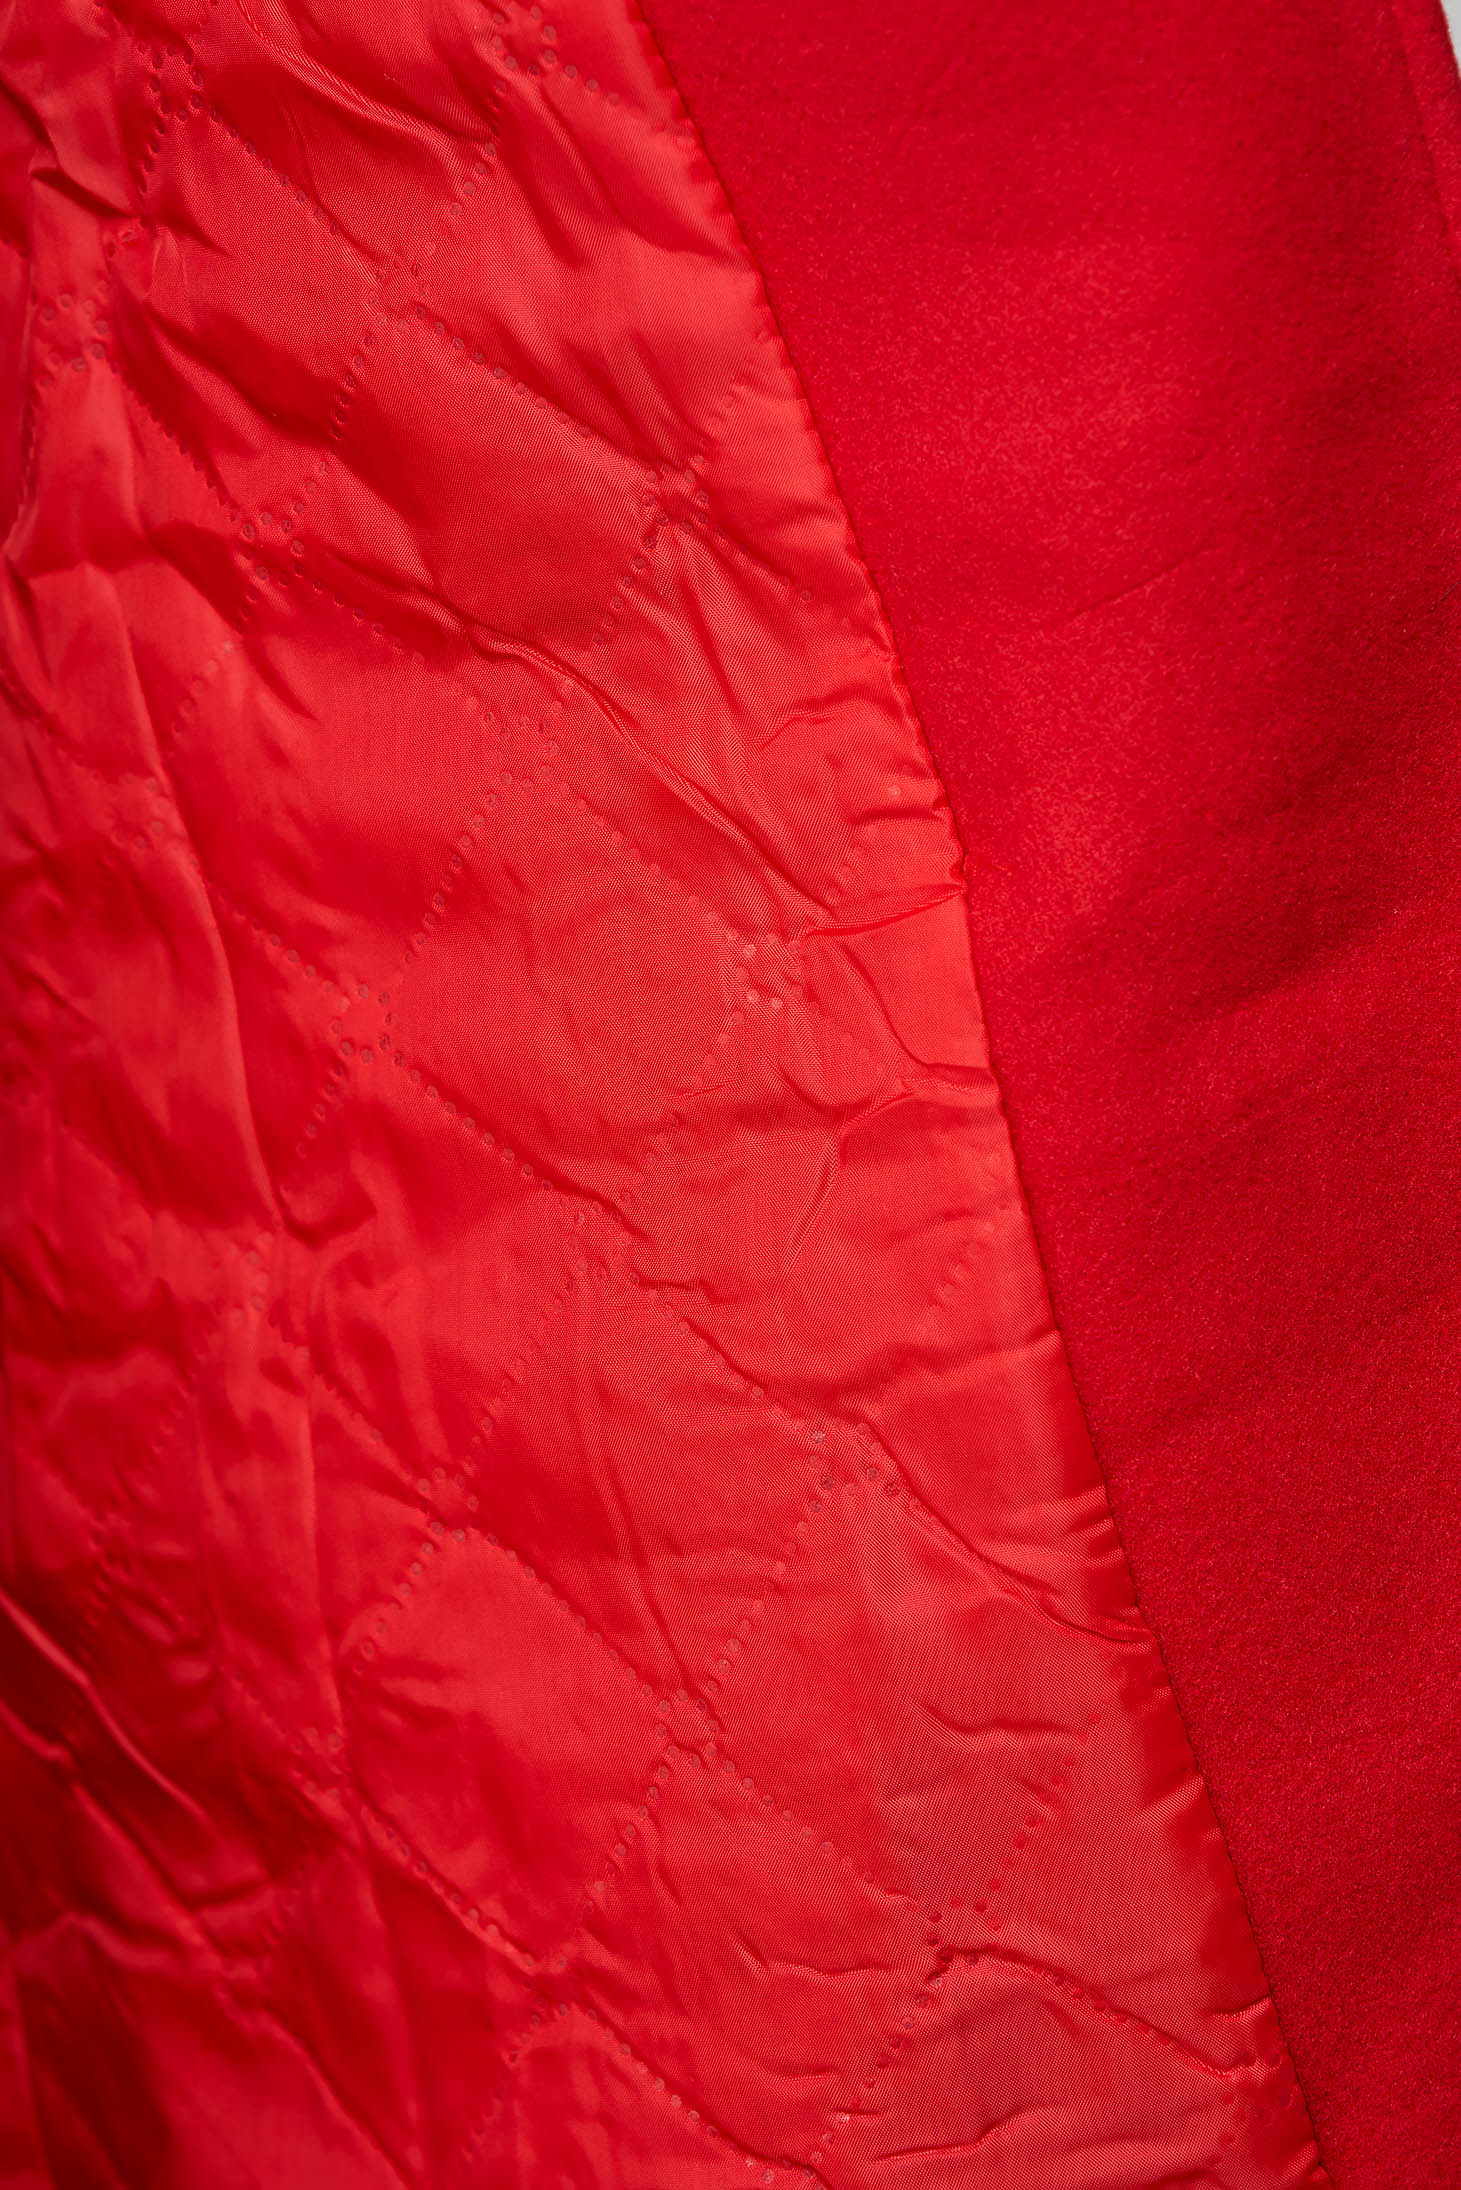 Palton din lana rosu cambrat cu guler din blana ecologica - SunShine 6 - StarShinerS.ro